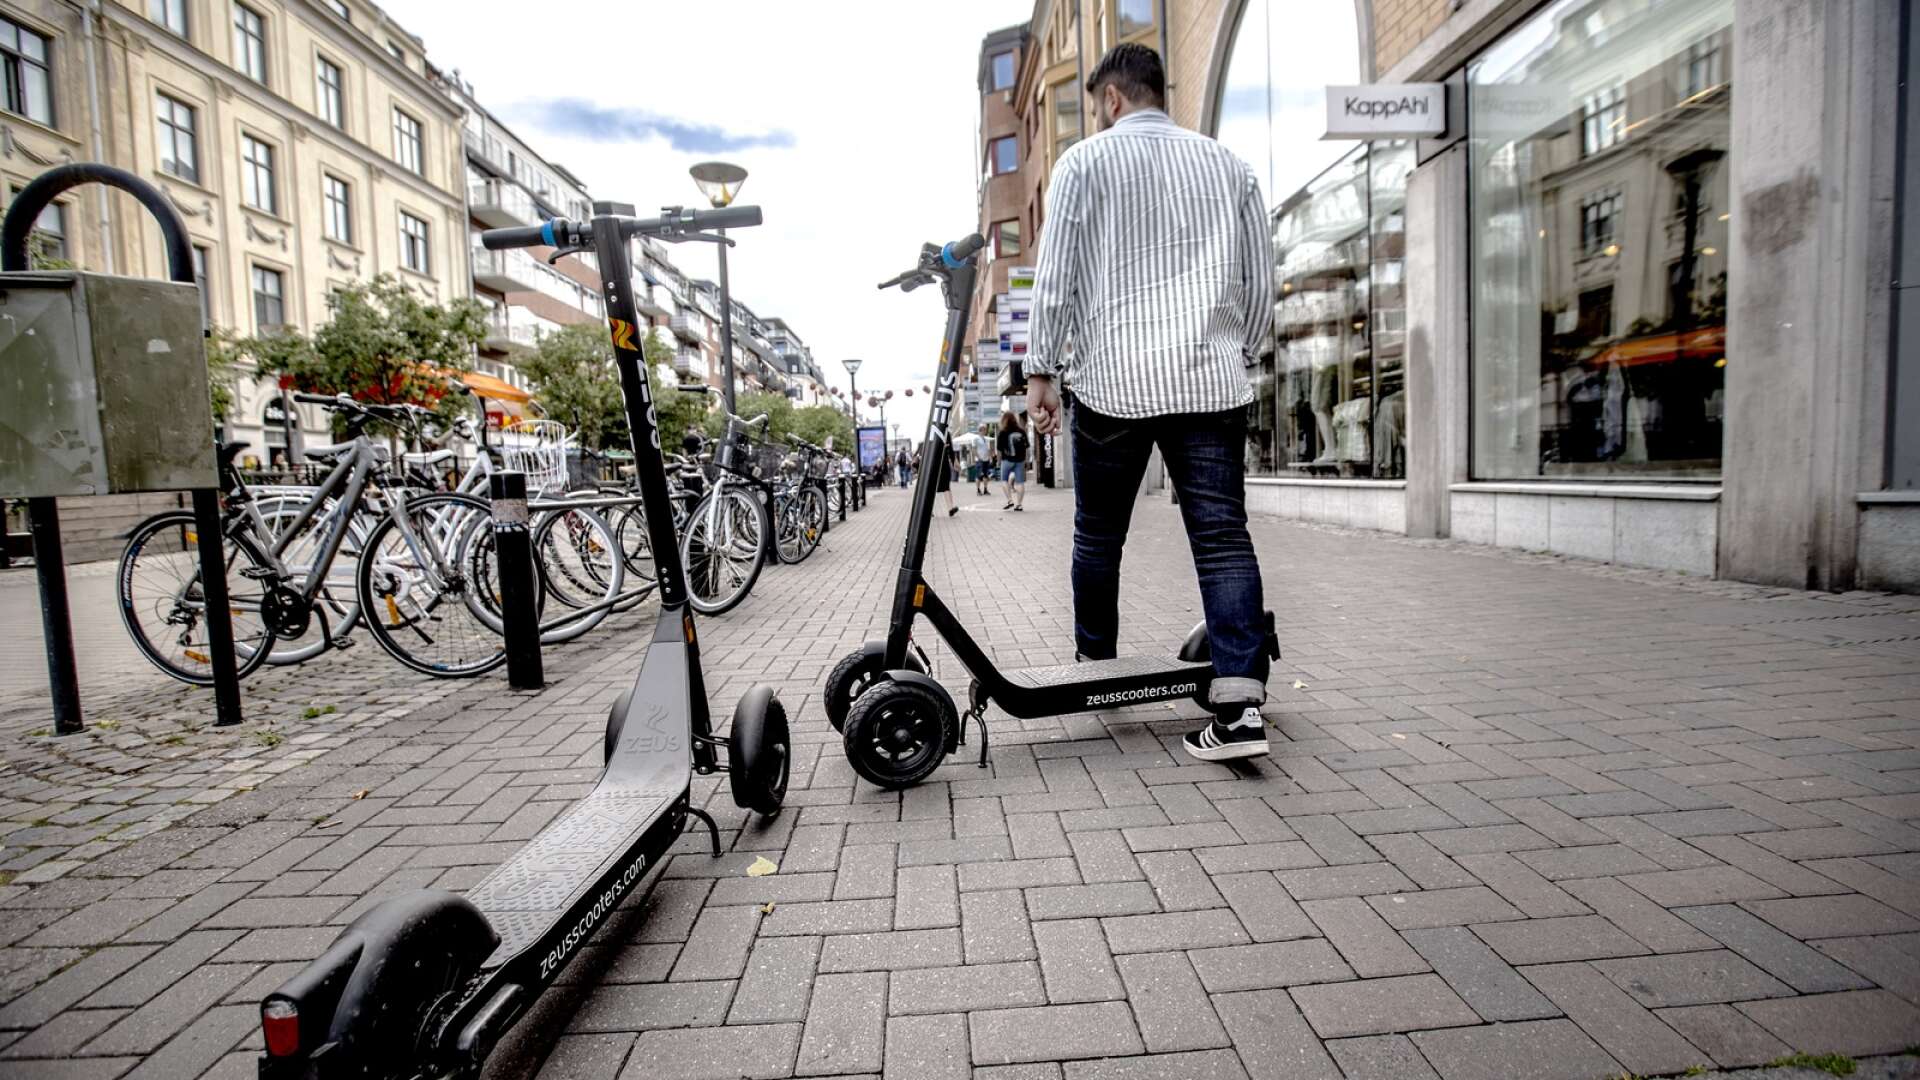 Många har reagerat på elsparkcyklarna i Karlstad under sommaren som gått. Nu ska kommunen titta på lösningar inför kommande högsäsong.